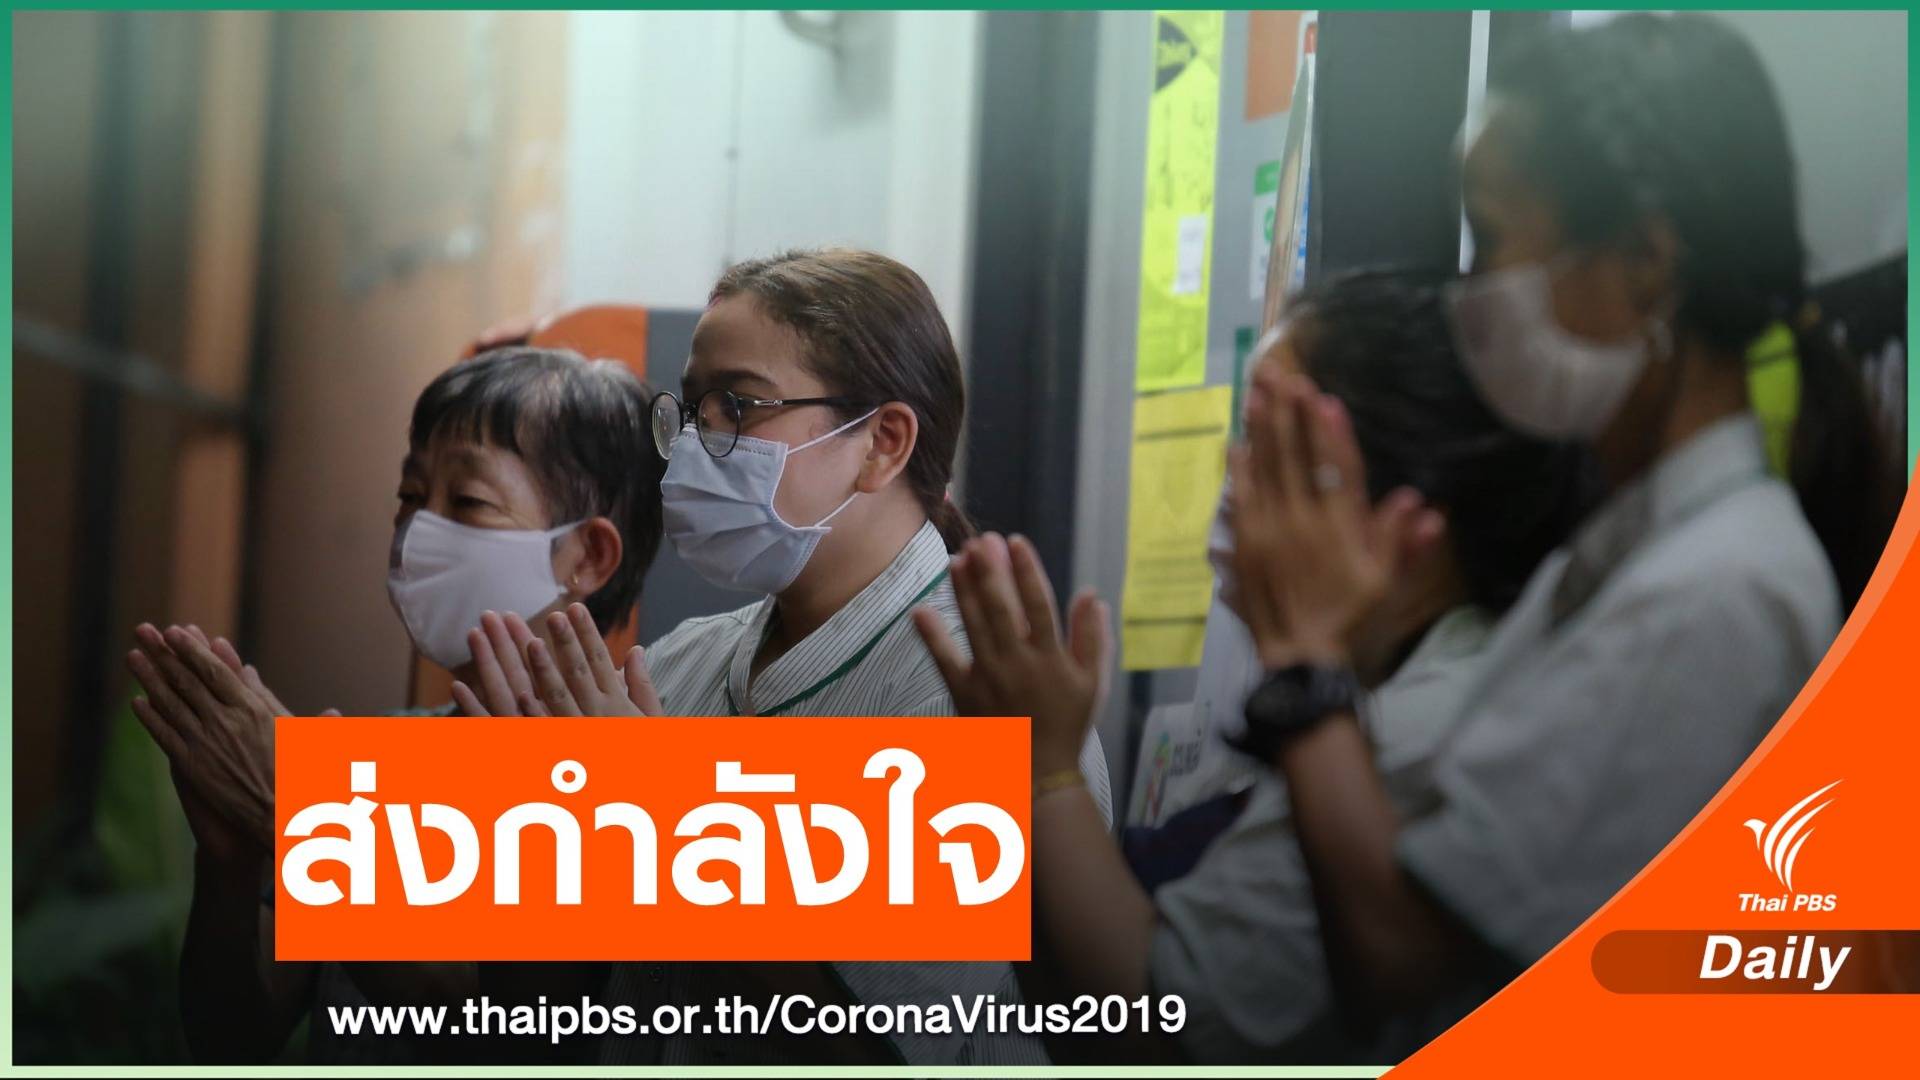 คนไทย ส่งเสียงปรบมือเป็นกำลังใจ ให้ทีมแพทย์สู้ไวรัส